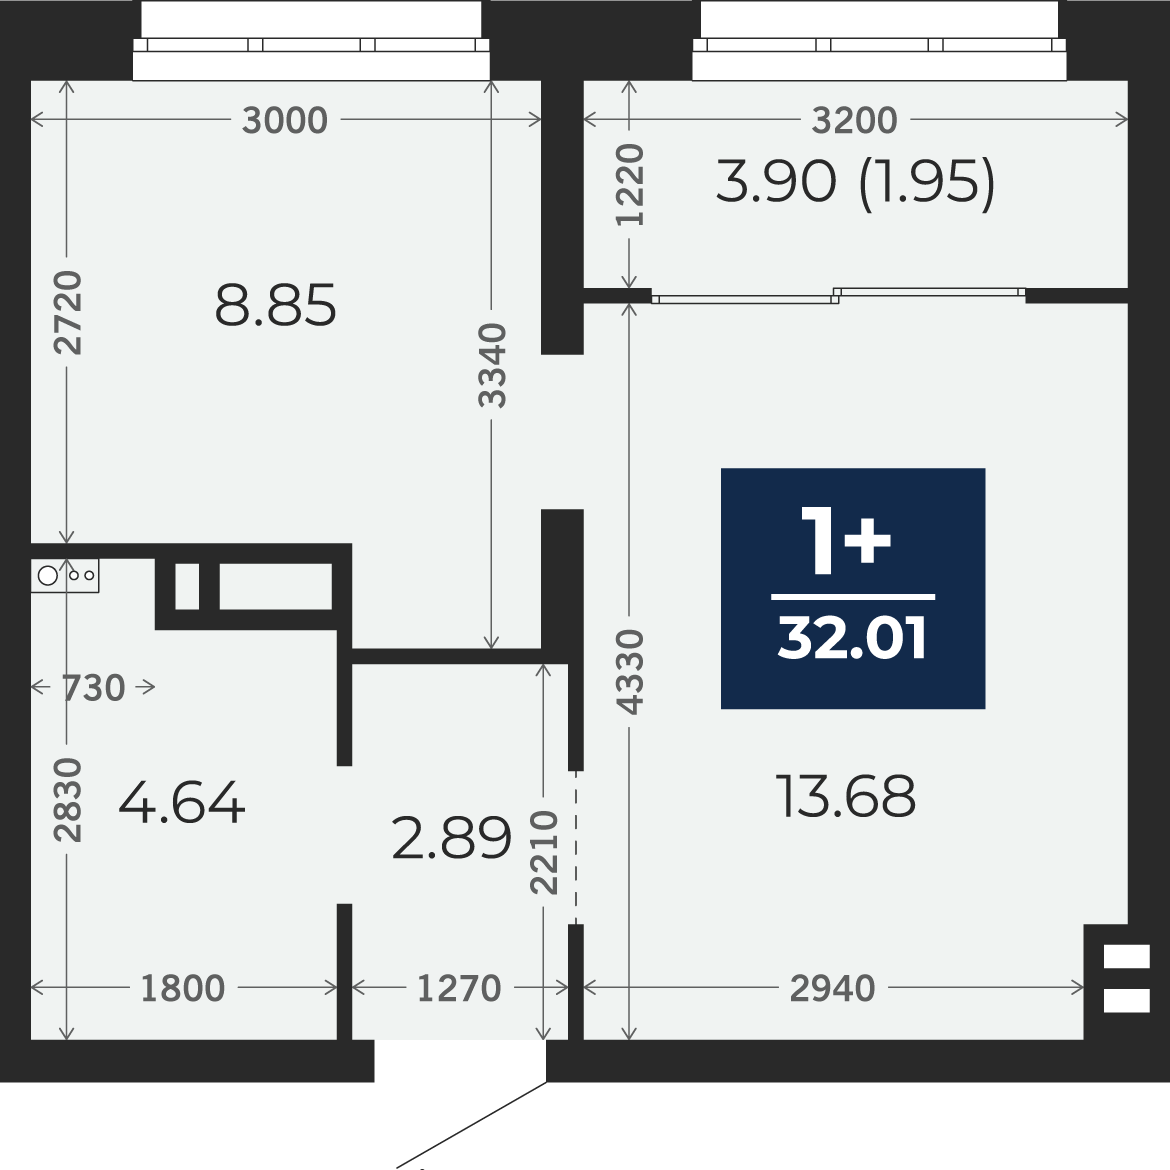 Квартира № 332, 1-комнатная, 32.01 кв. м, 16 этаж